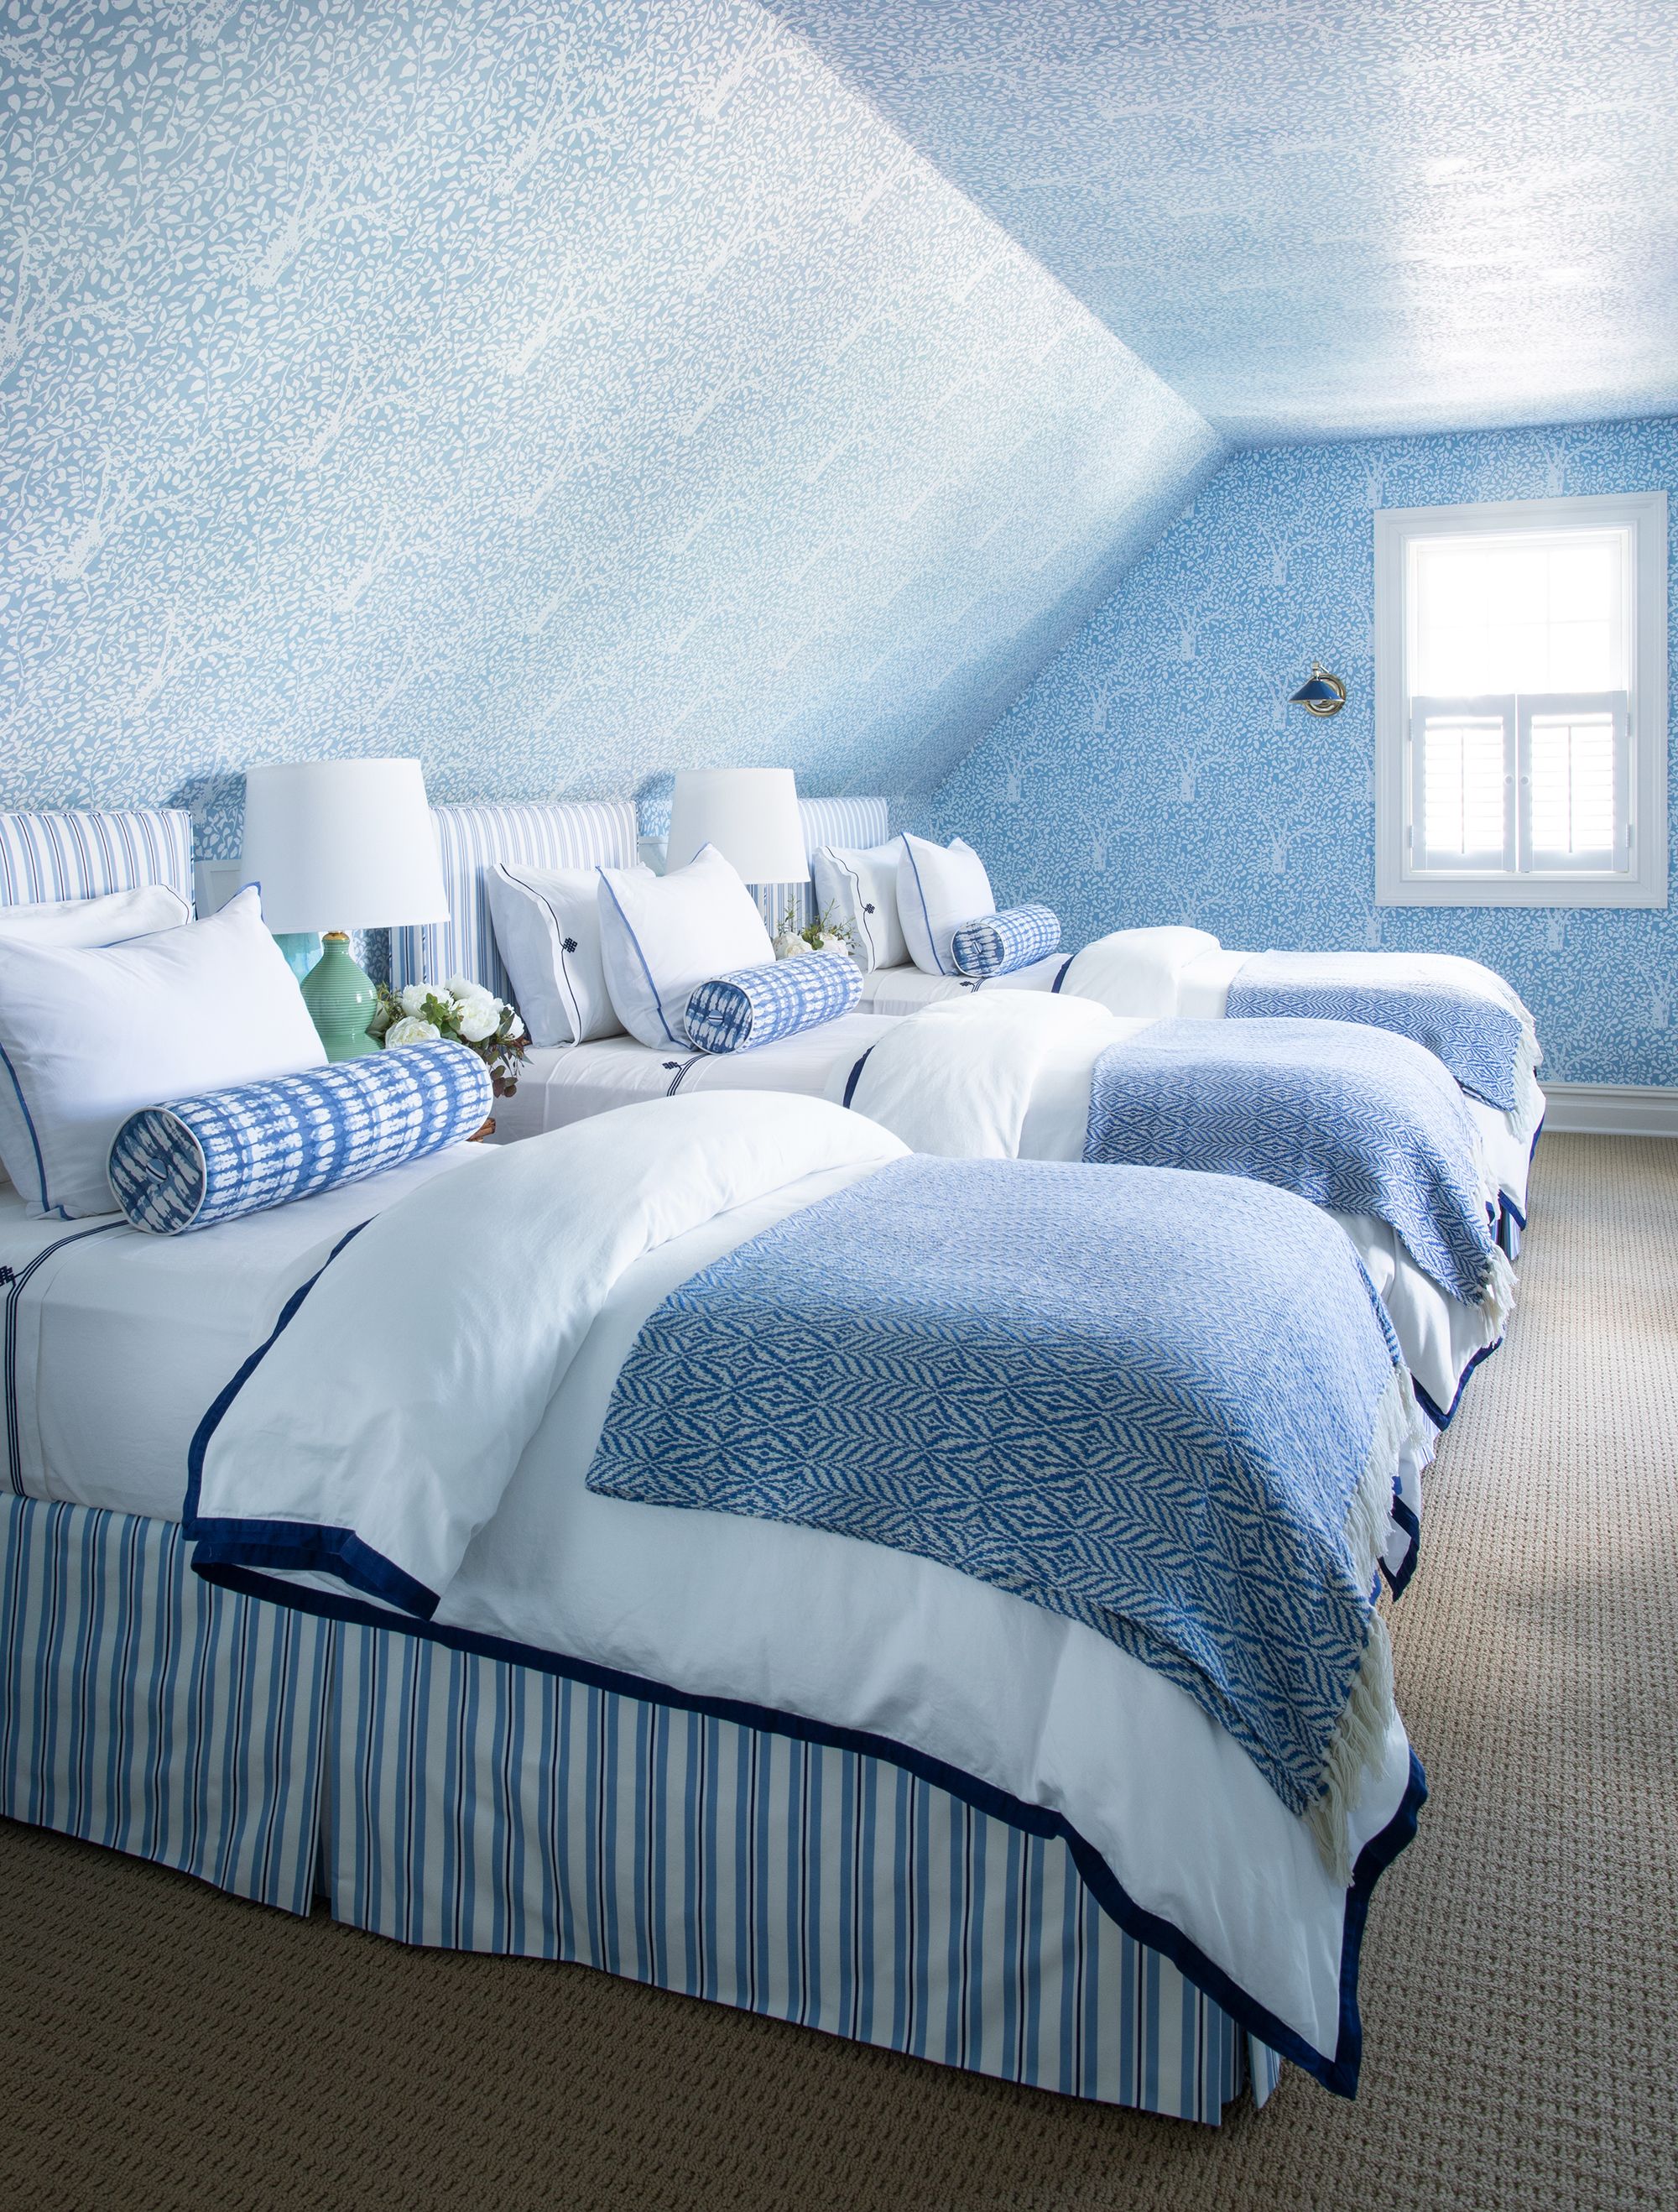 Aesthetic Bedroom Wallpapers